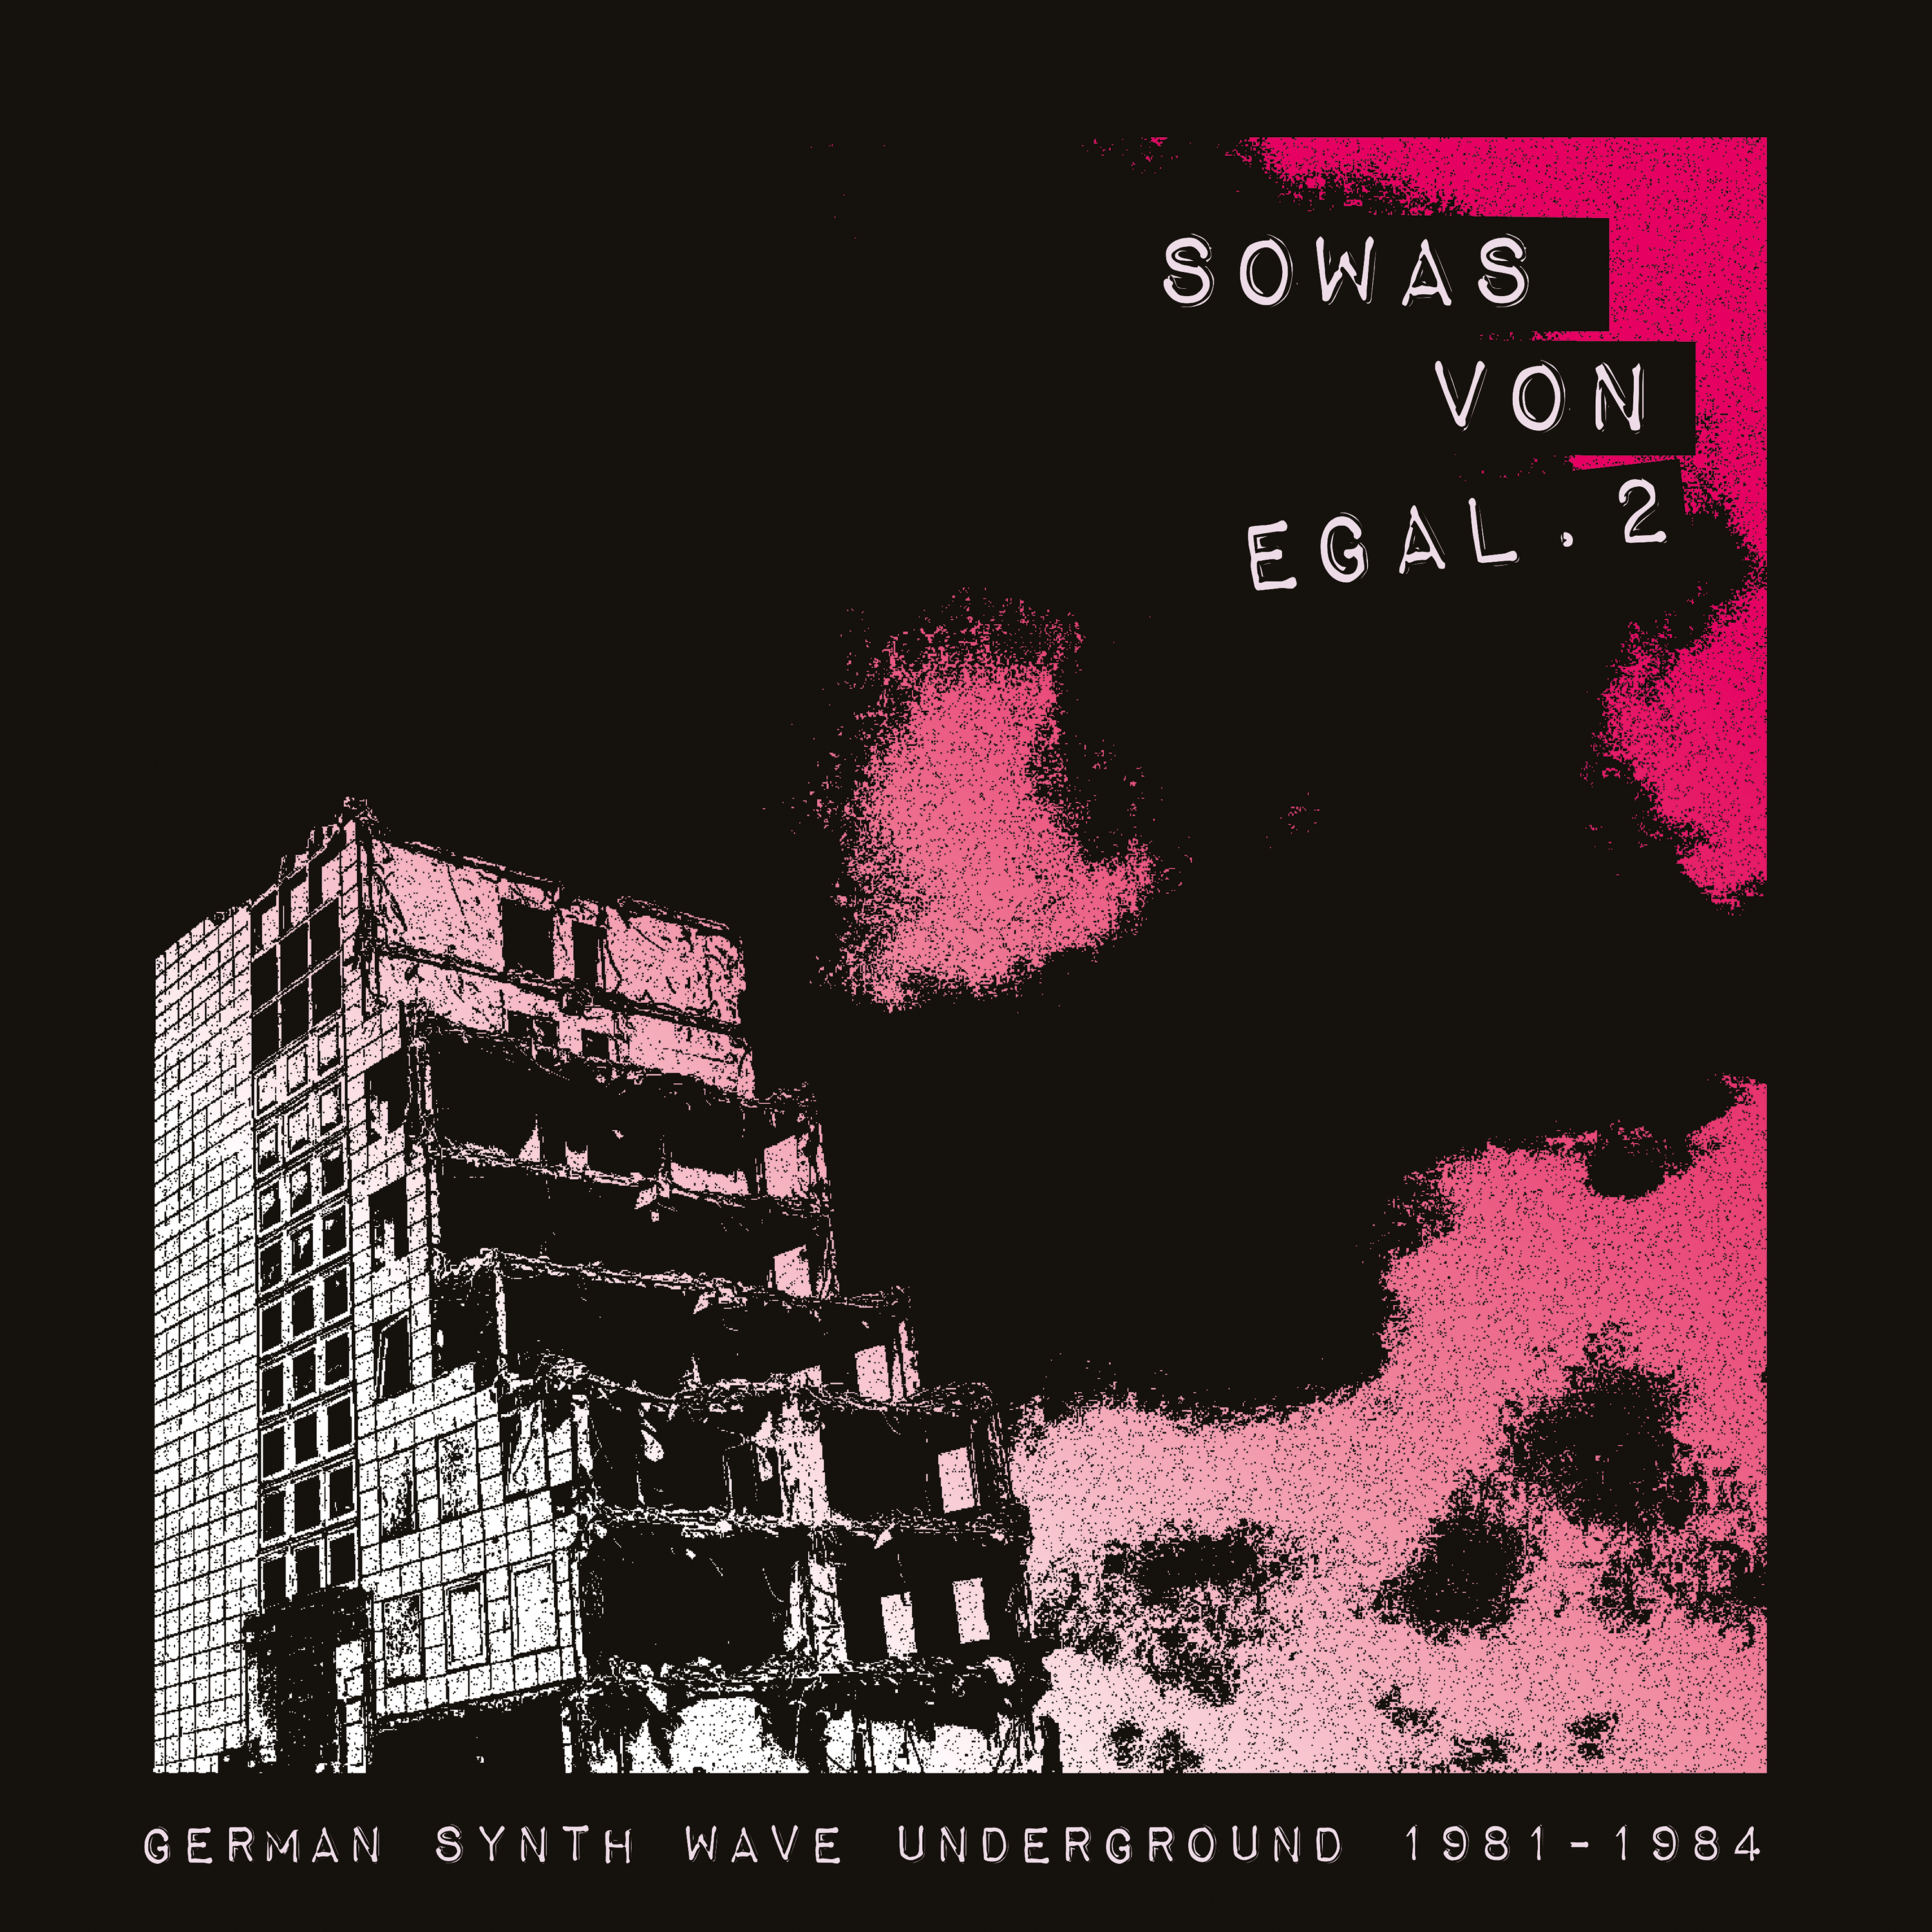 V.A. Sowas von egal 2 - German Synth Wave Underground 1981-1984